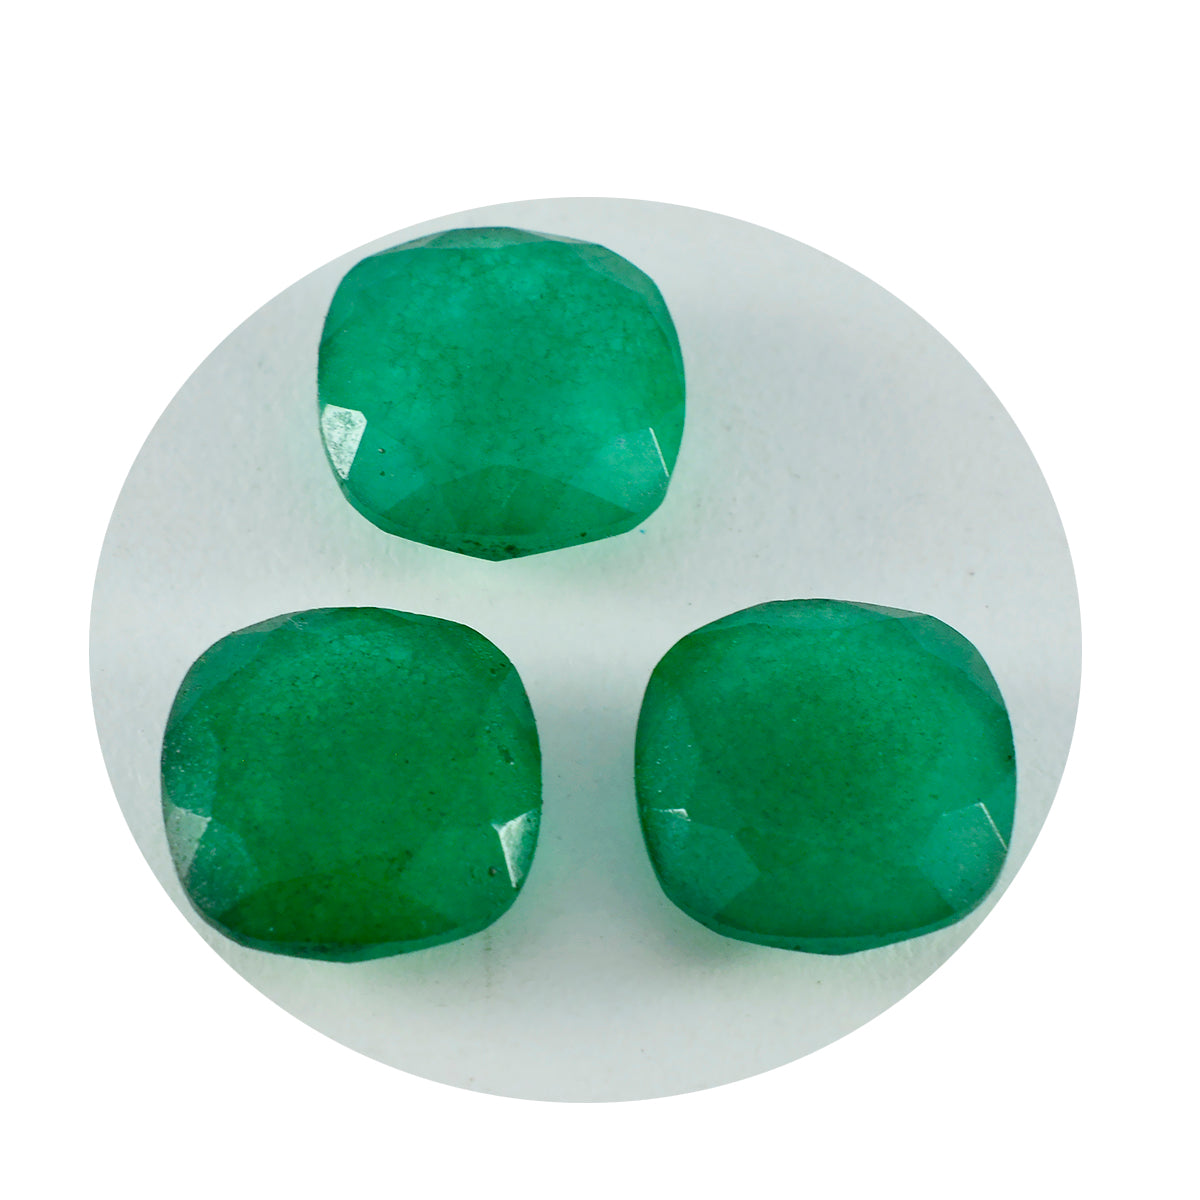 Riyogems 1 pieza de jaspe verde auténtico facetado de 10x10 mm con forma de cojín, piedra preciosa de buena calidad